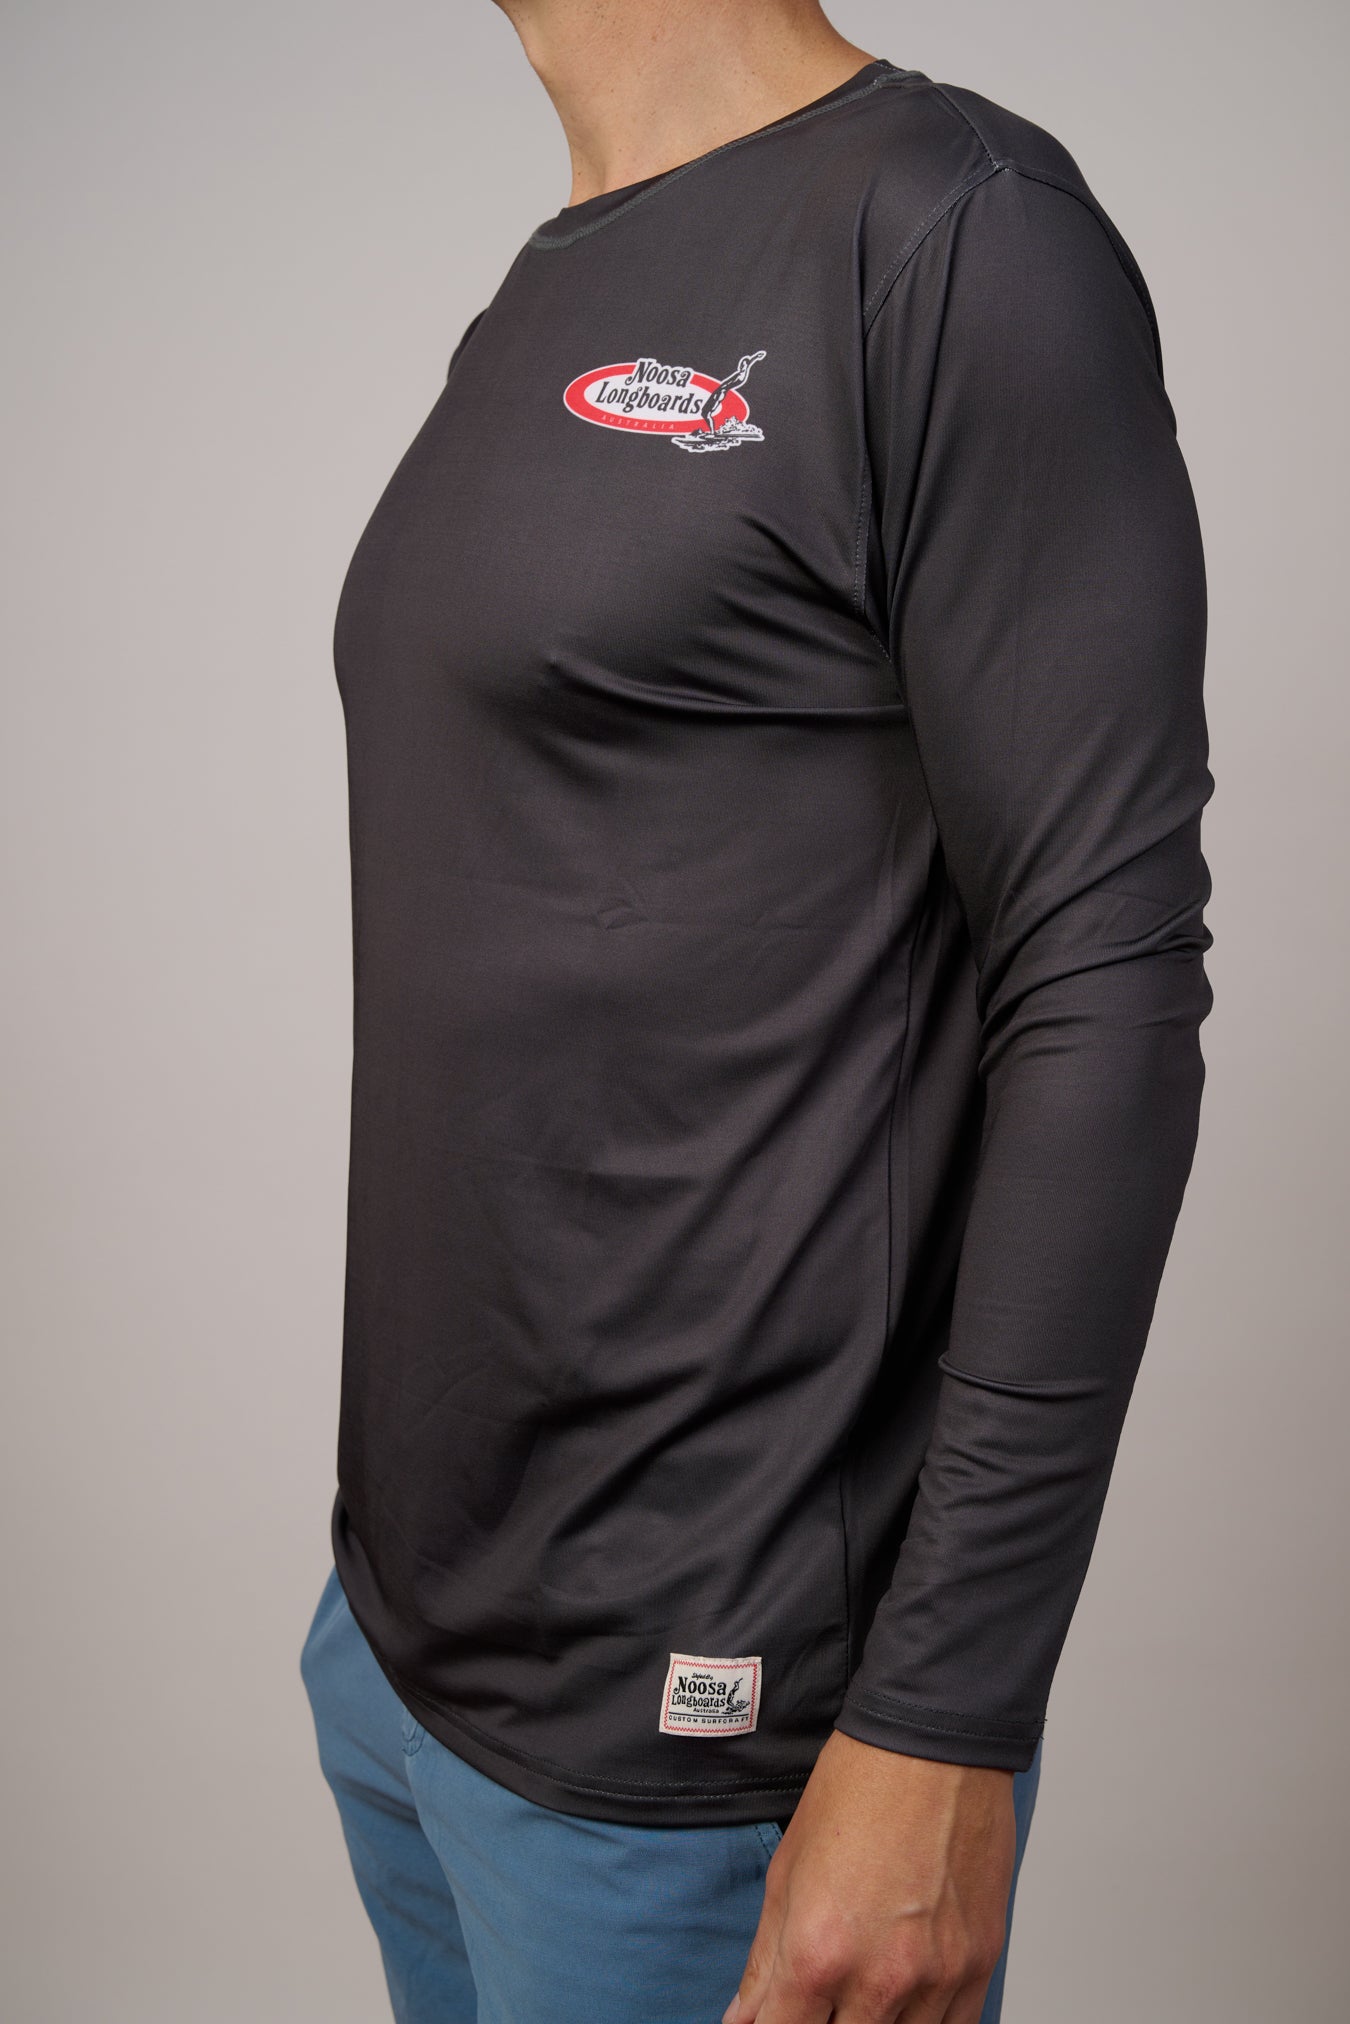 NL Long Sleeve Original Rash shirt Black